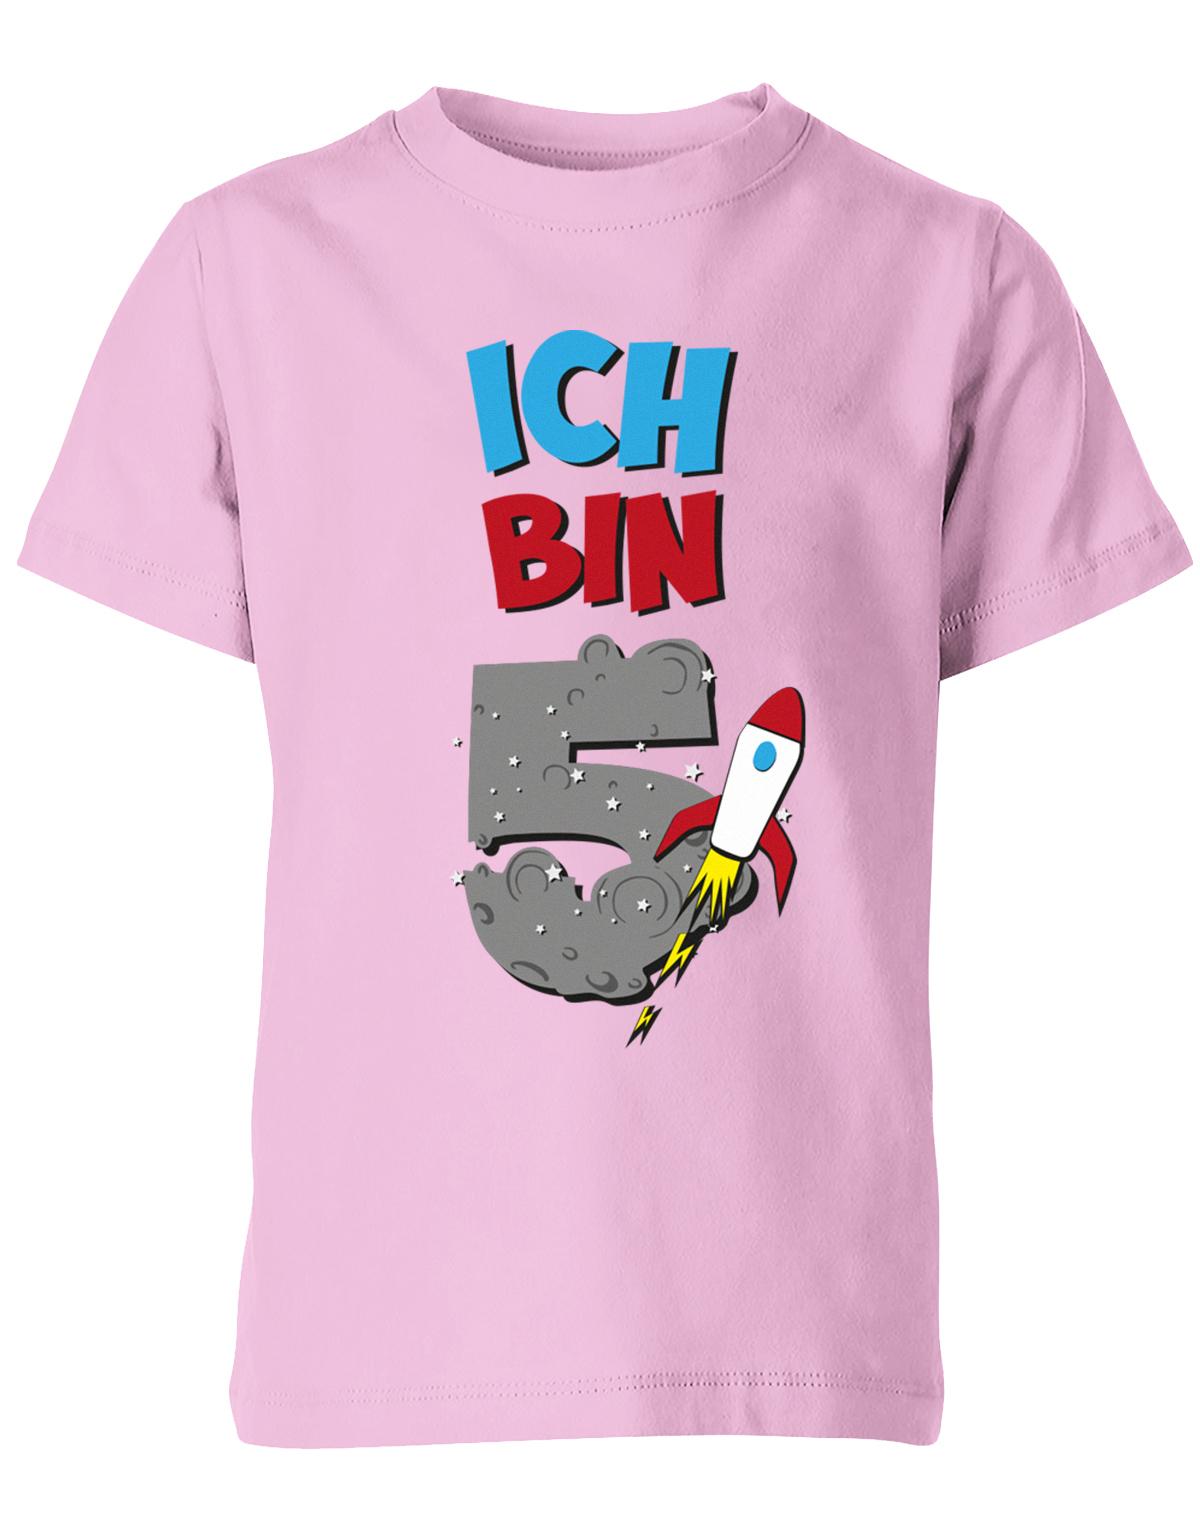 ich-bin-5-weltraum-rakete-planet-geburtstag-kinder-shirt-rosa